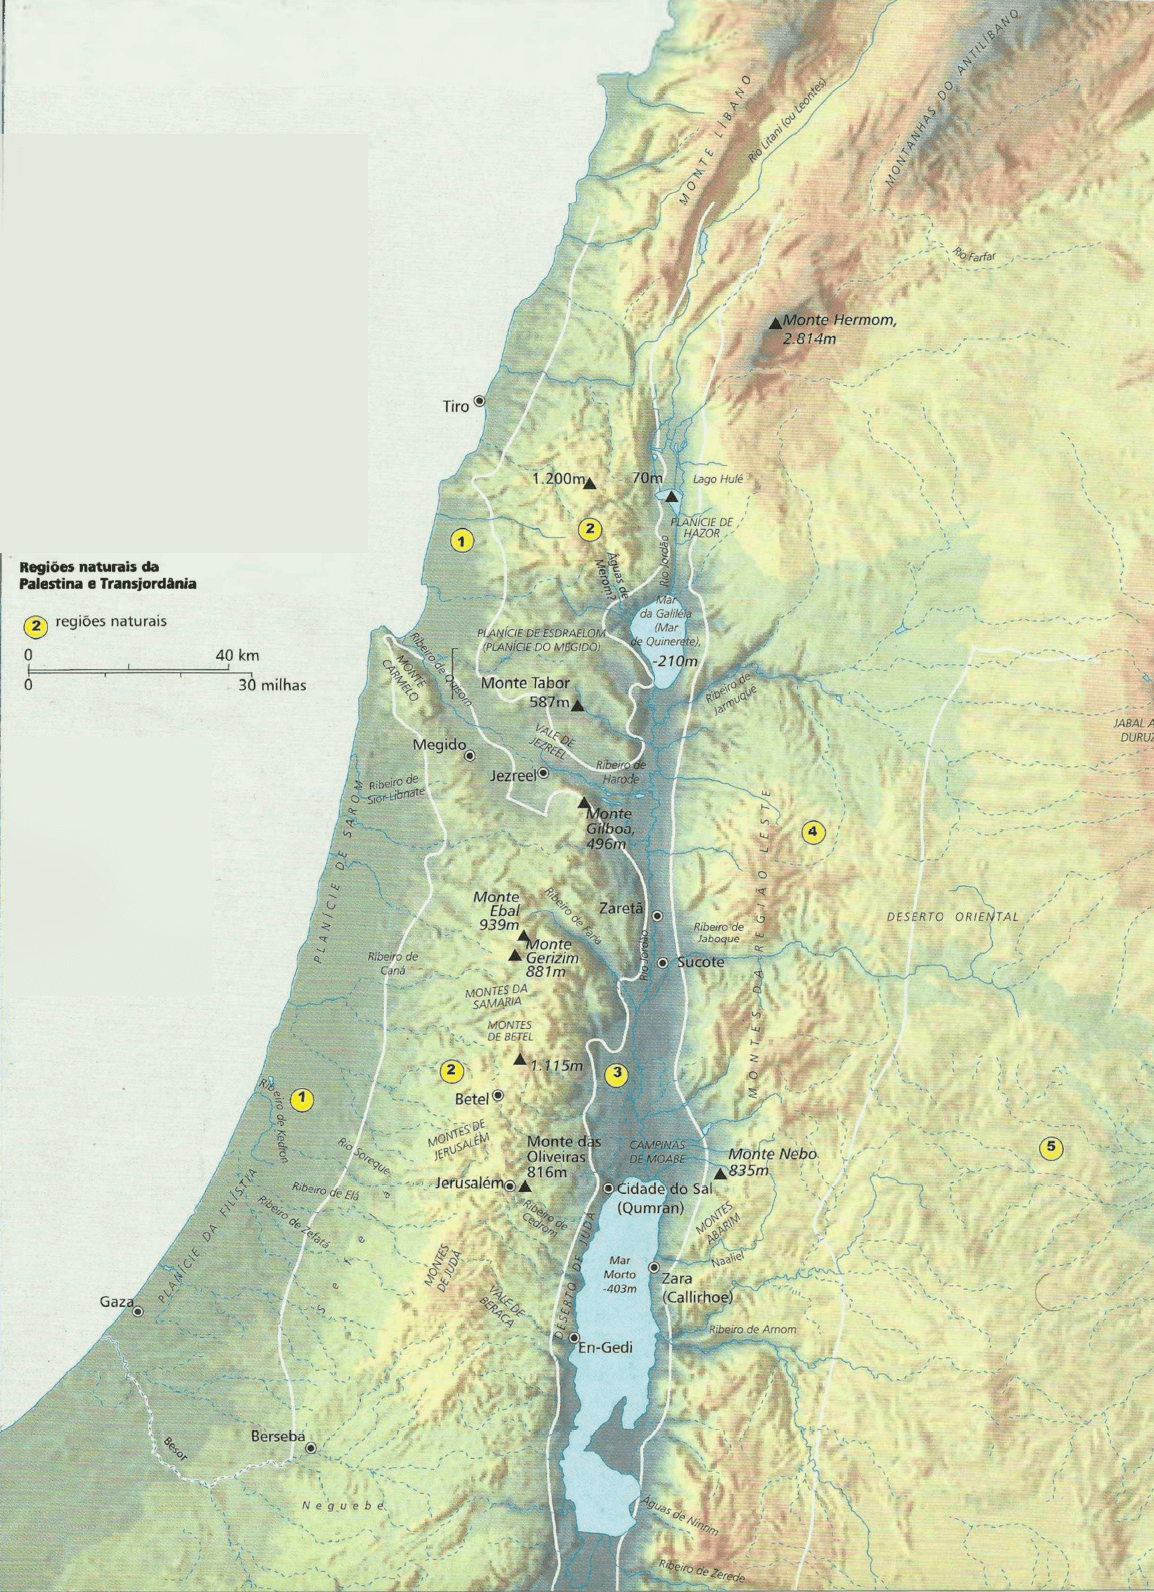 Regiões naturais da Palestina e Transjordânia